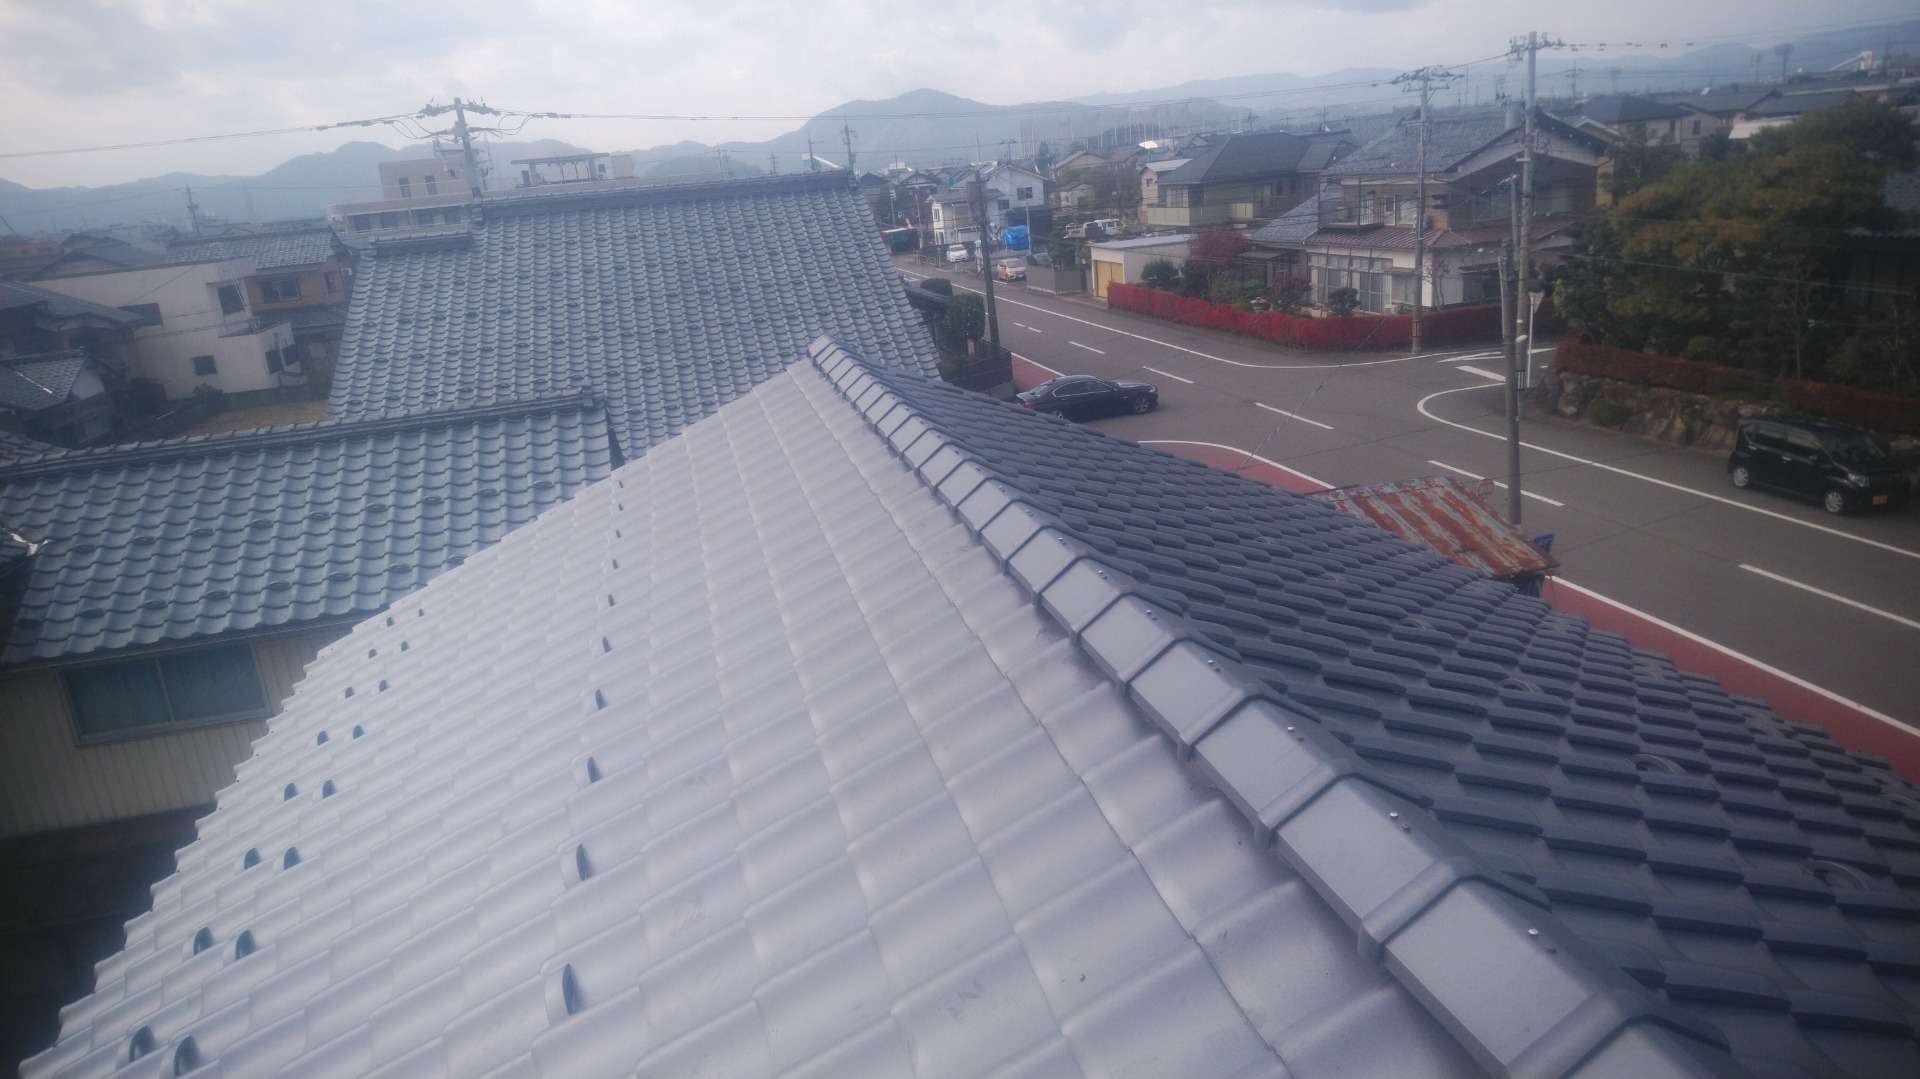 鯖江市で瓦屋根の葺き替え工事に来ています。